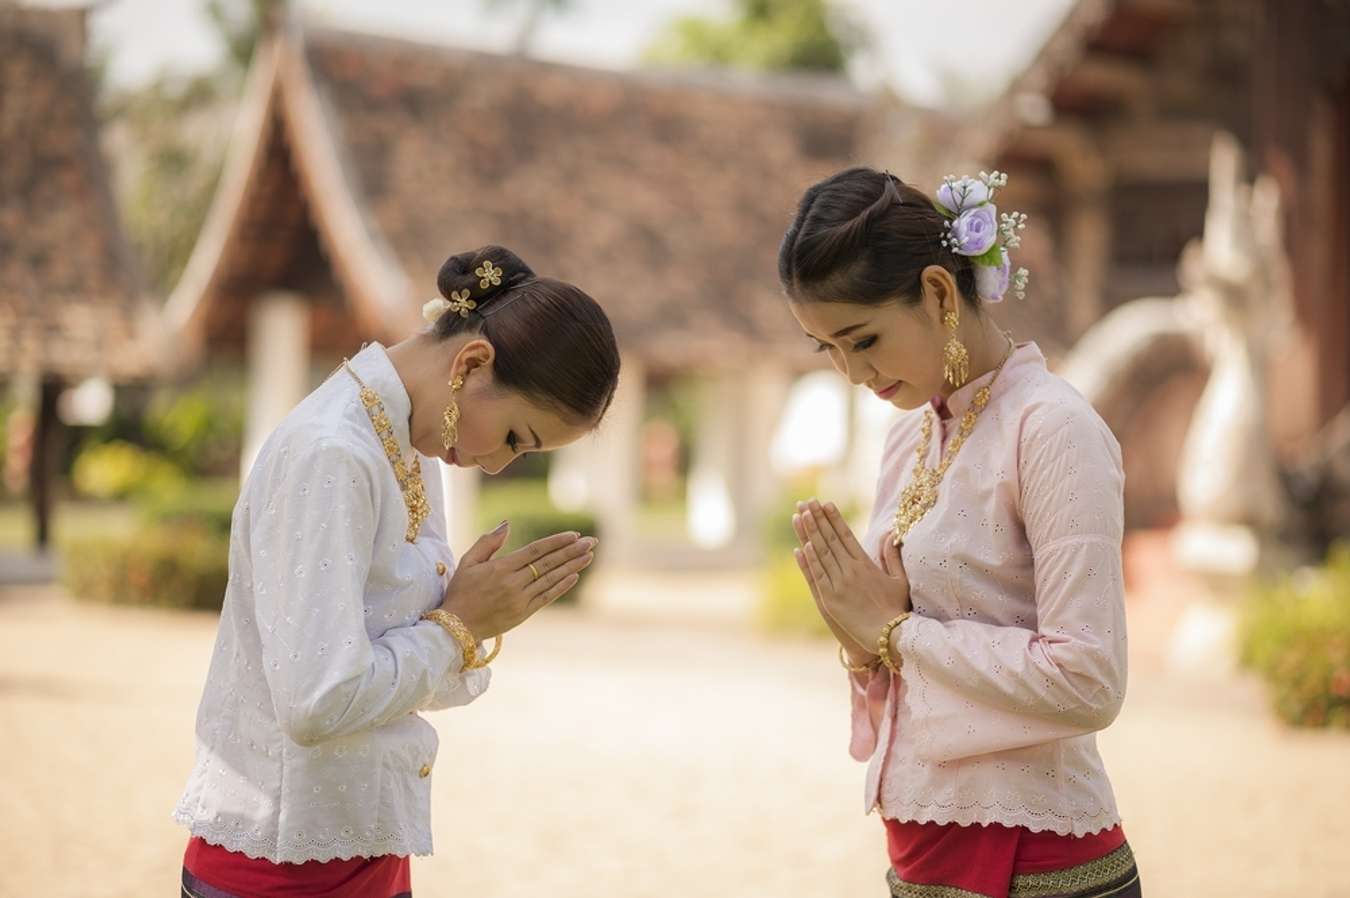 Chào hỏi là một trong những văn hóa đặc trưng tại Thái Lan